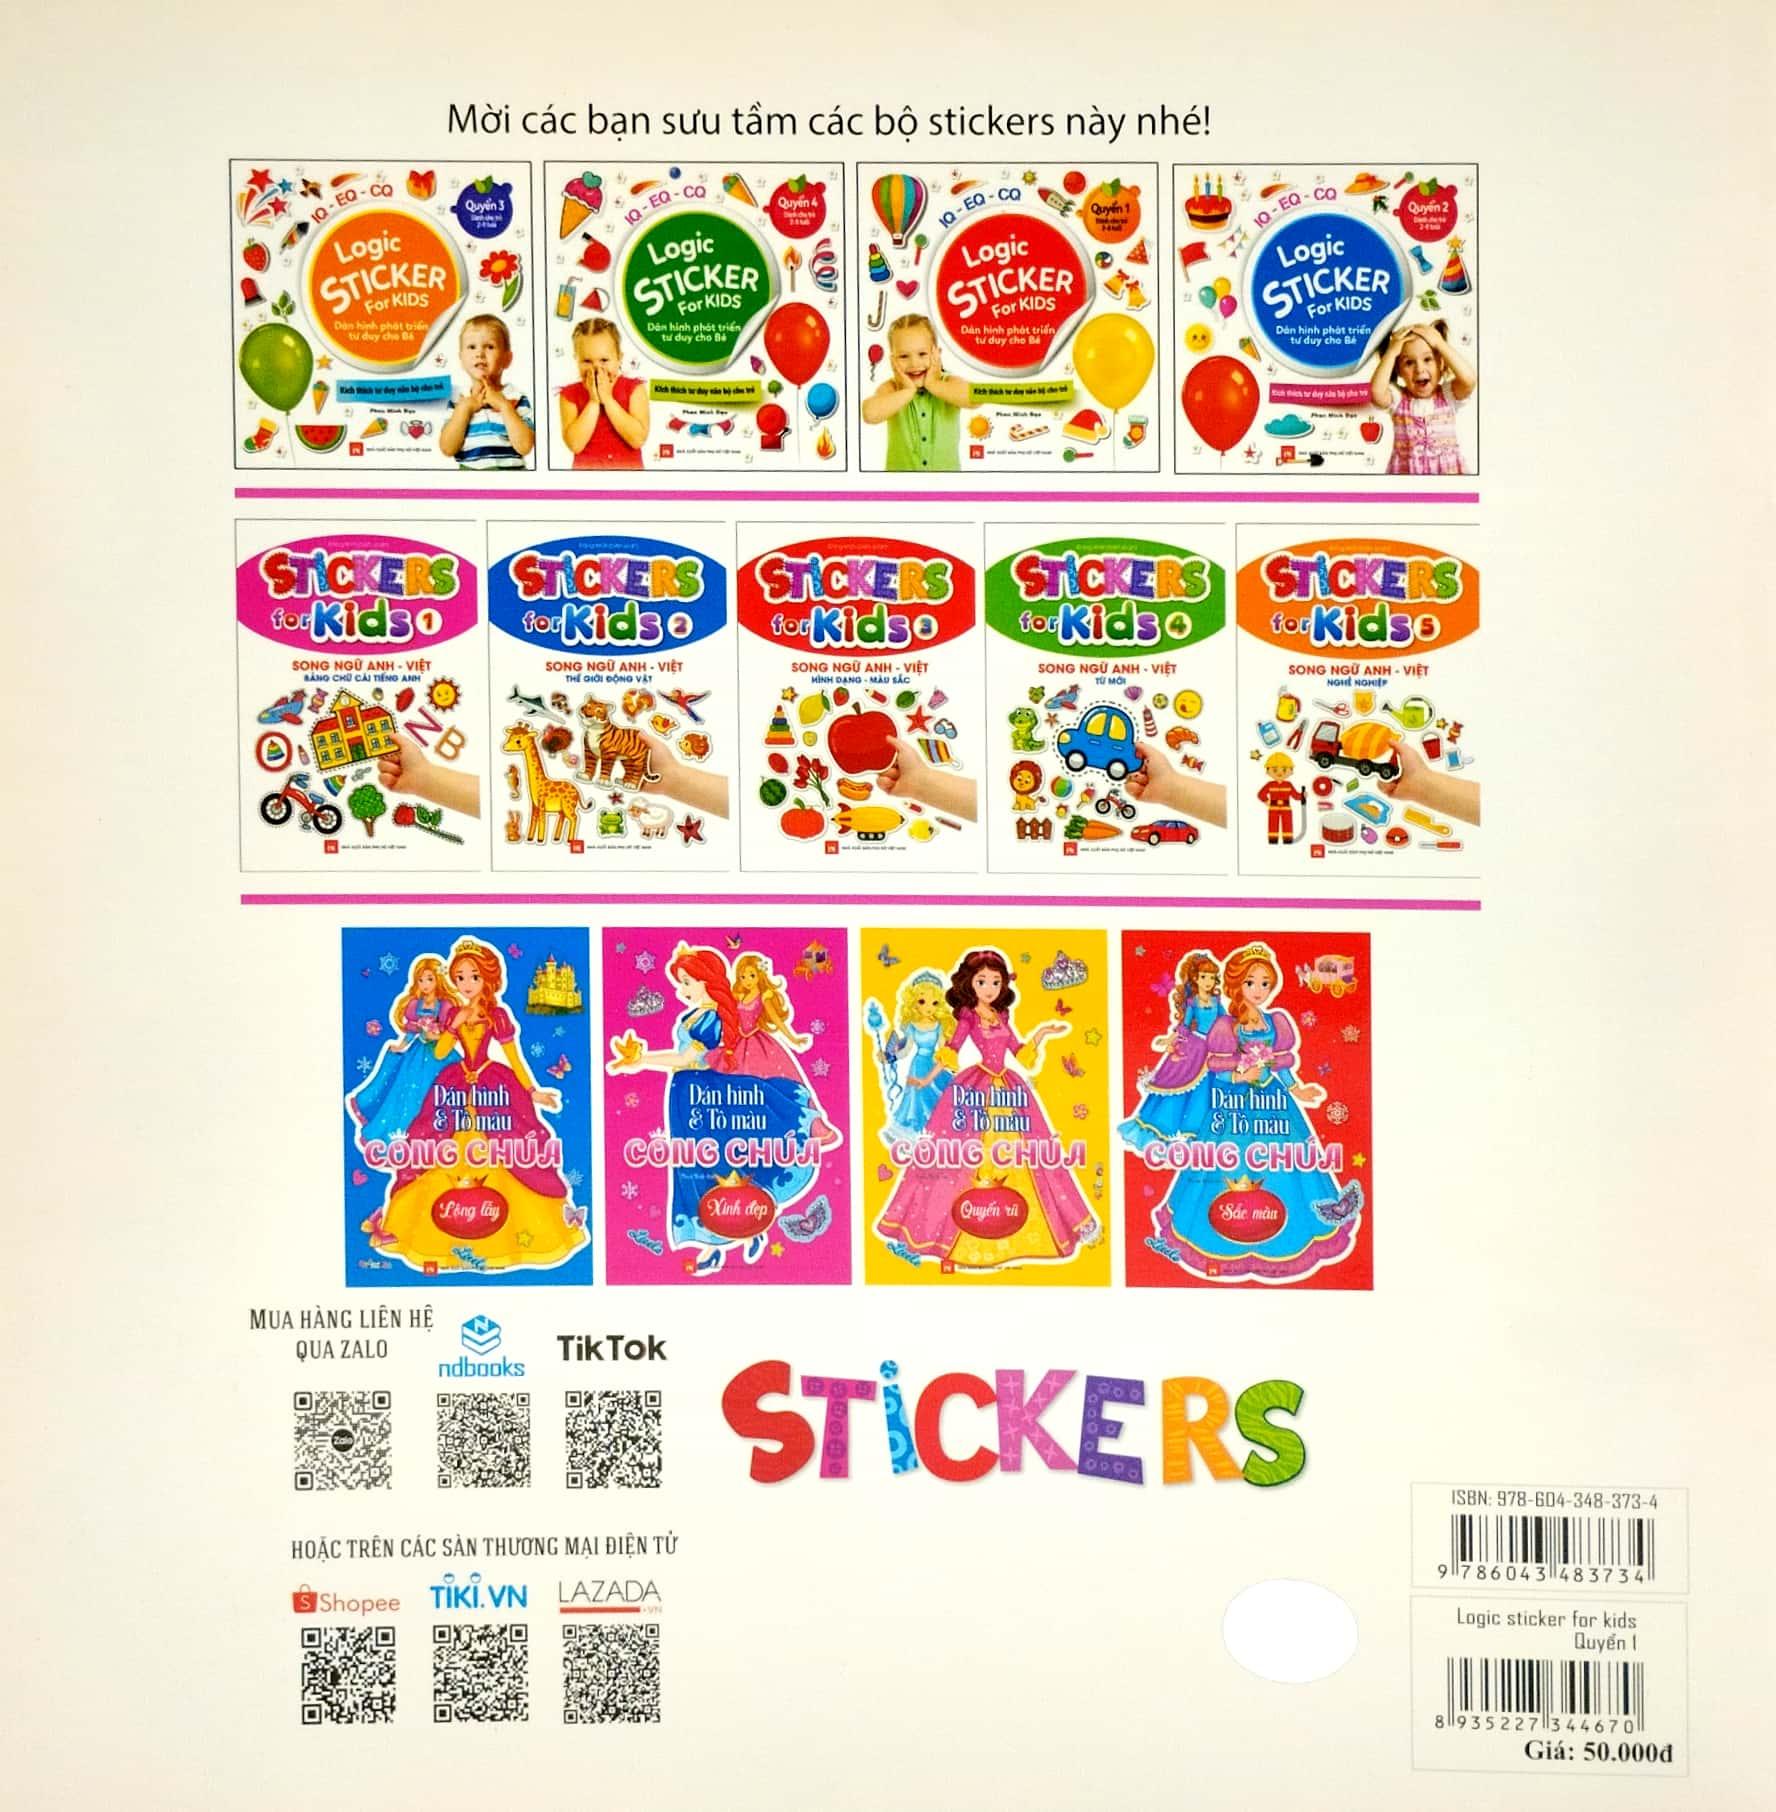 Logic Sticker For Kids - Dán Hình Phát Triển Tư Duy Cho Bé - Quyển 1 (Dành Cho Trẻ 2-8 Tuổi)